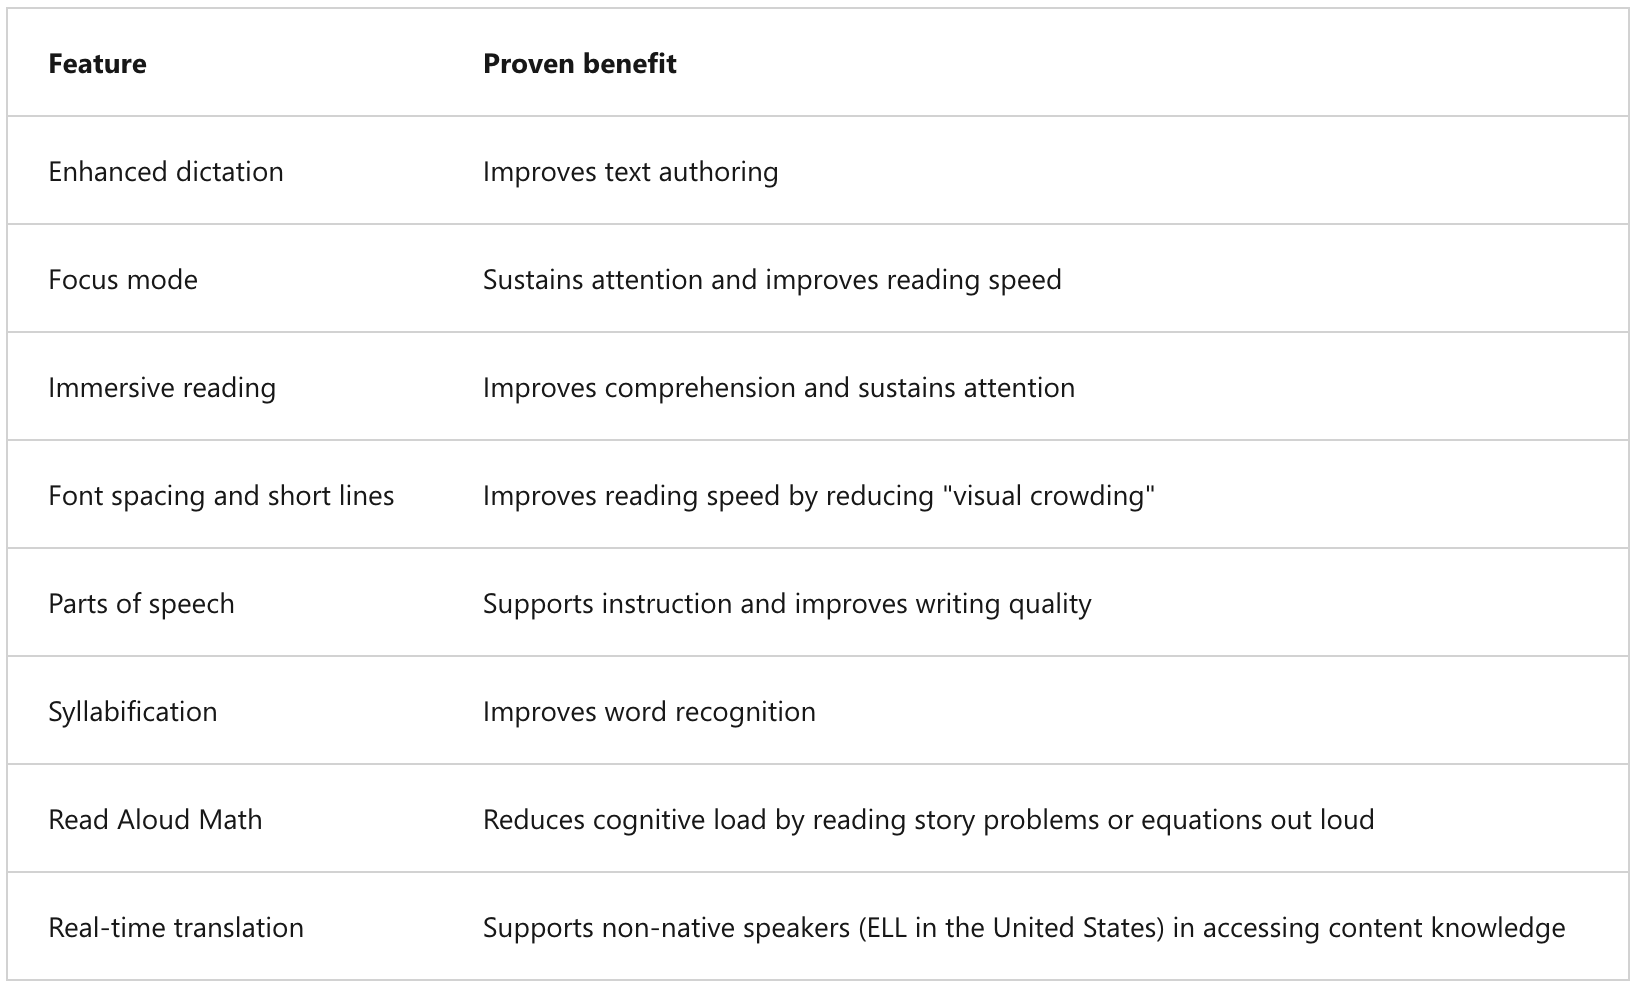 Functies en de bijbehorende bewezen voordelen van Immersive Reader.